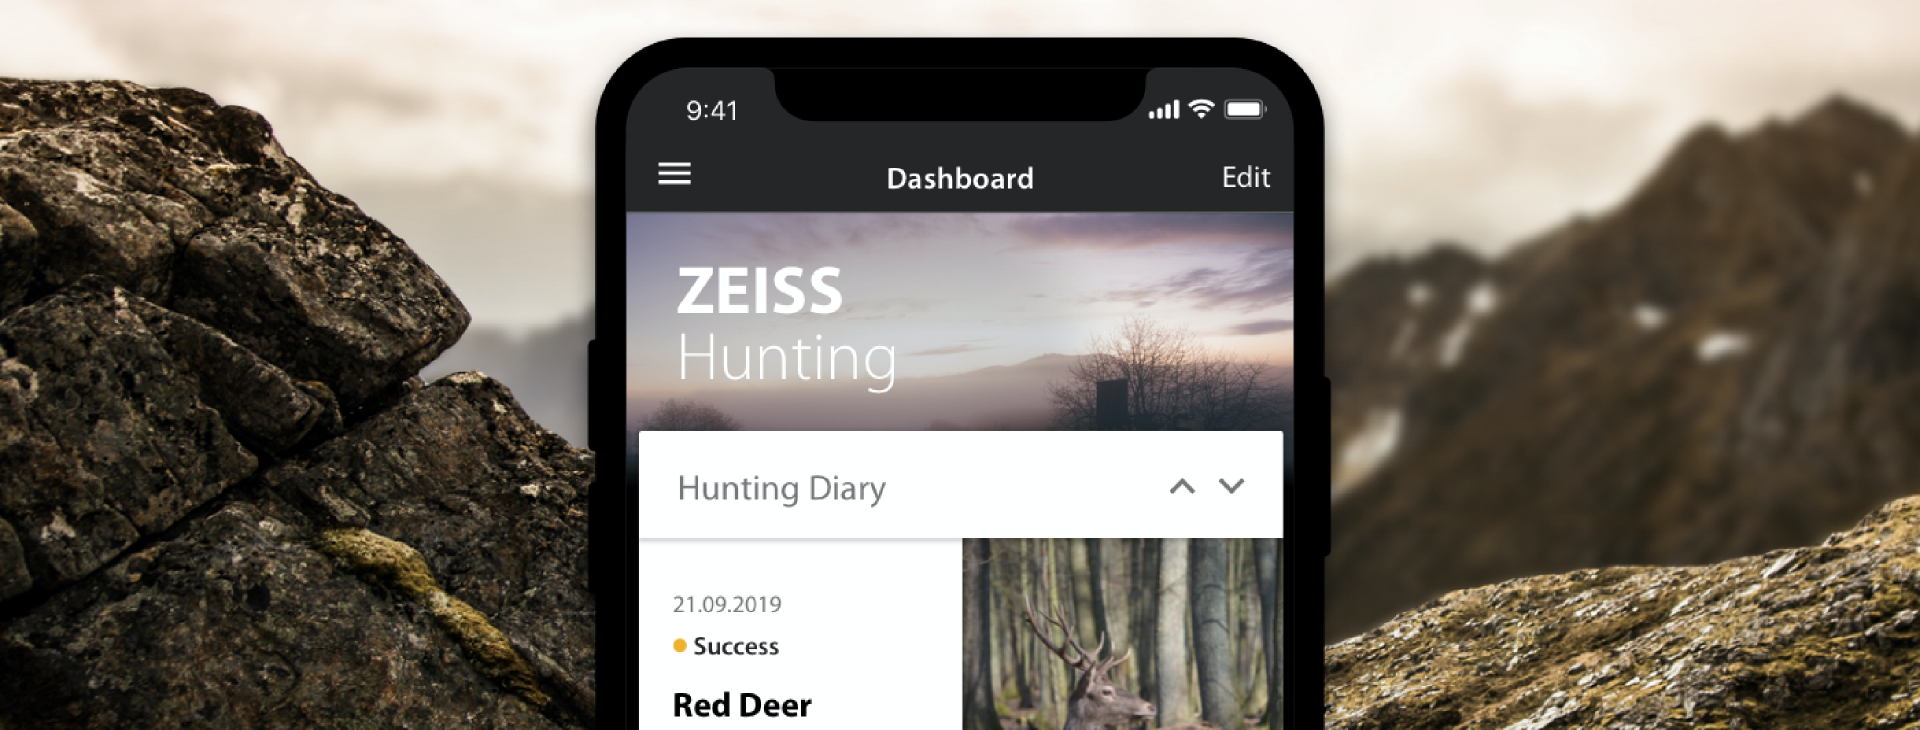 ZEISS Hunting App Dashboard Header Bild